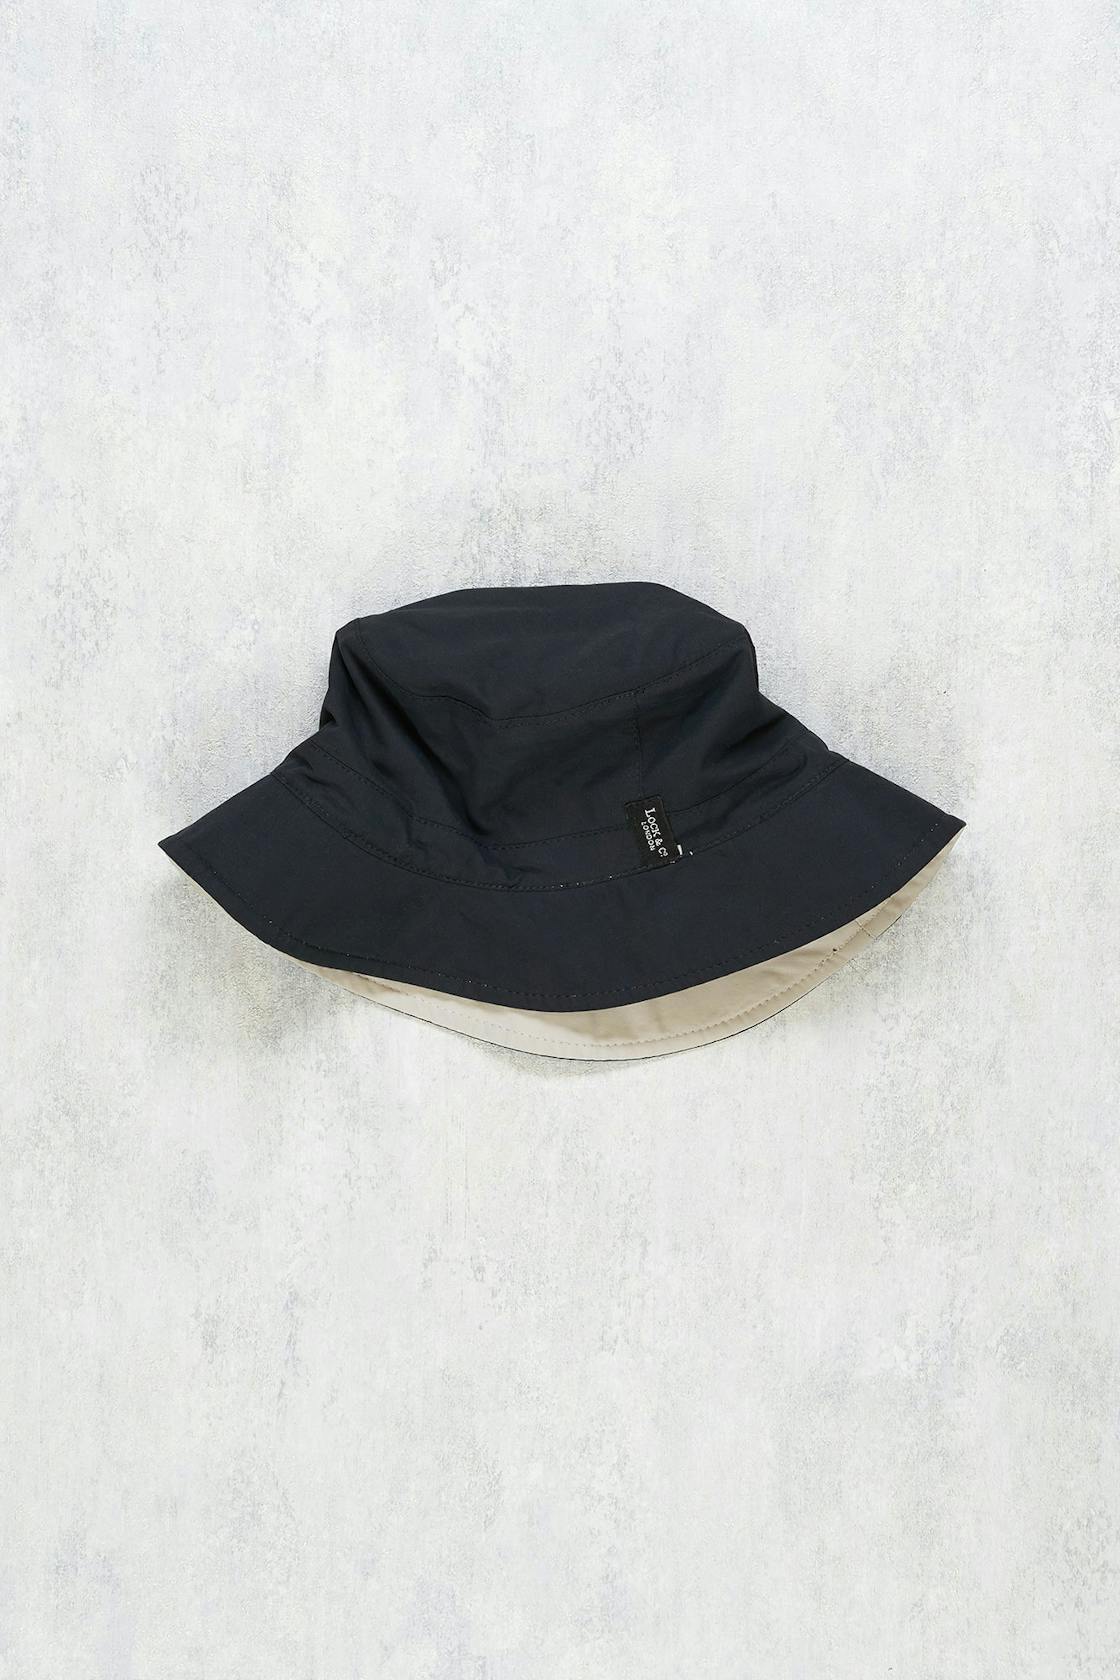 Lock & Co. Navy/Beige Reversible Water-Repellent Bucket Hat